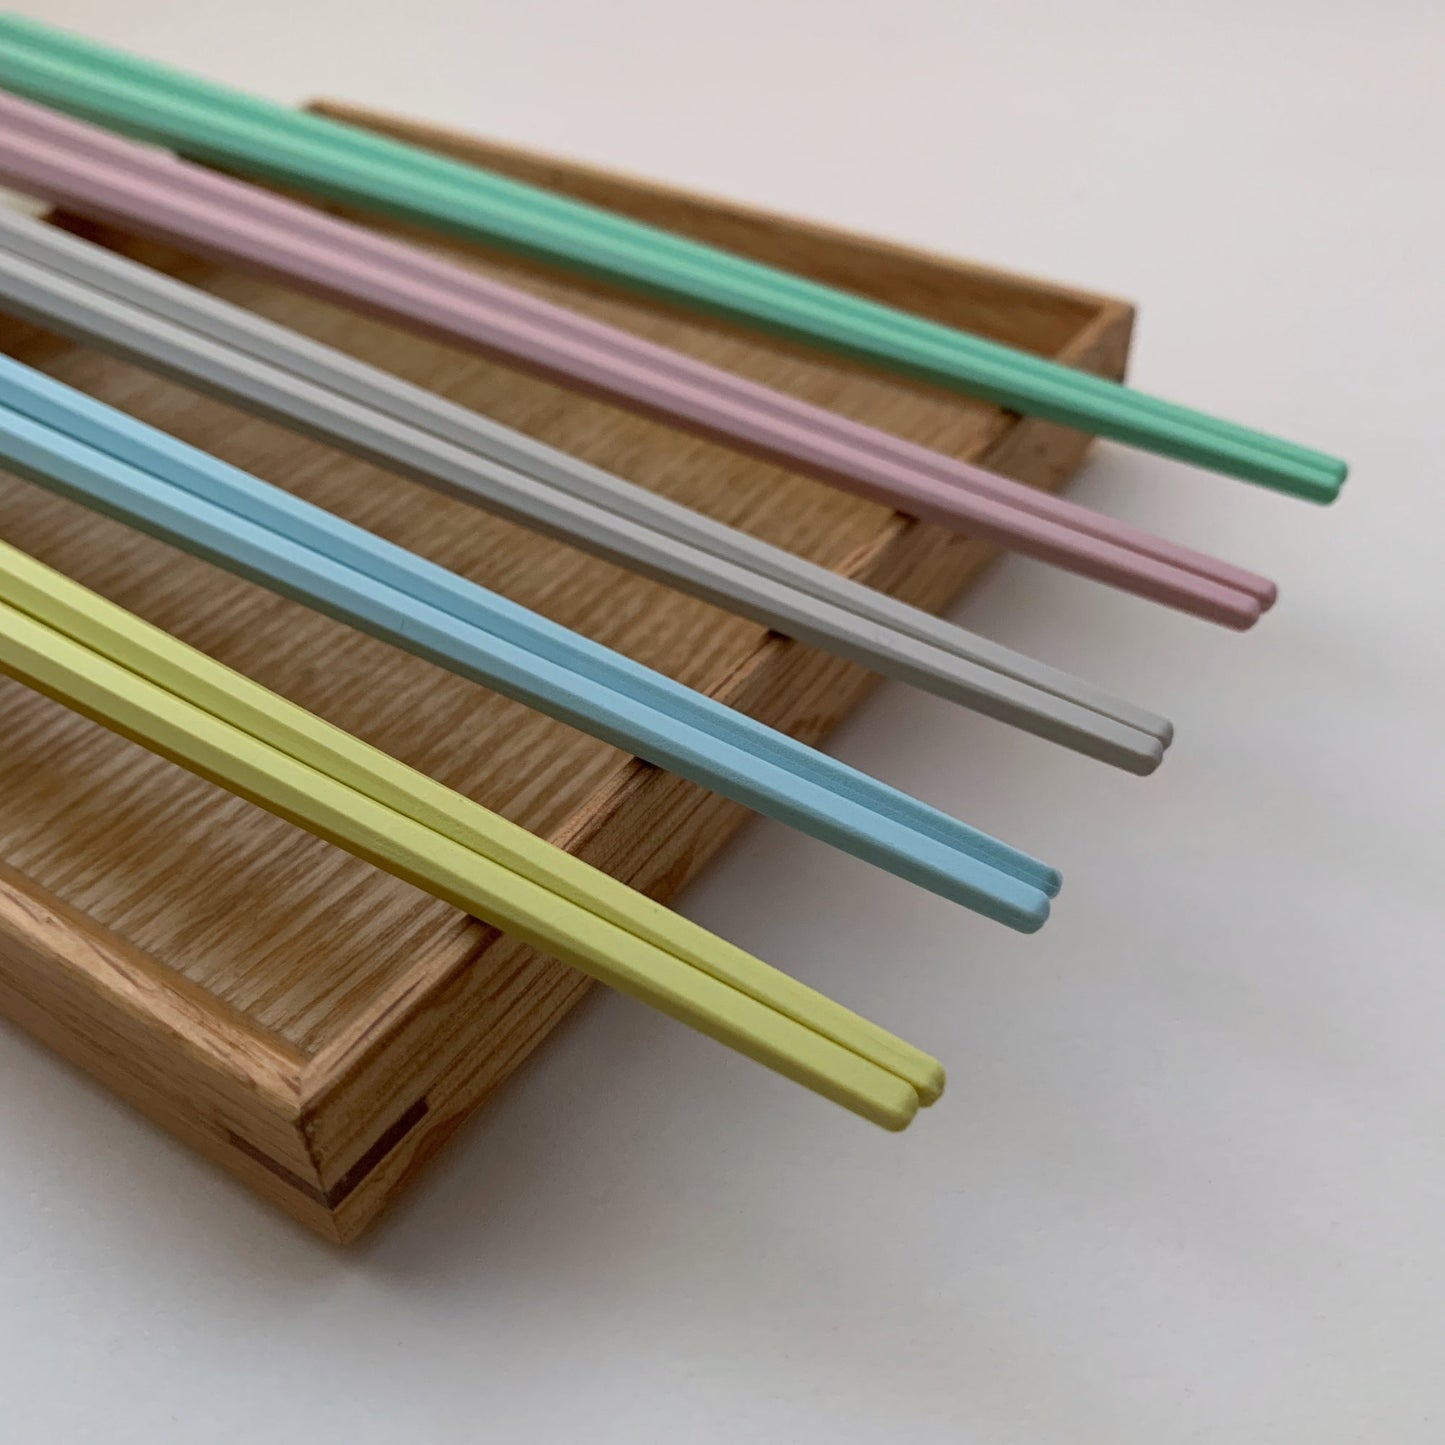 octagonal chopsticks